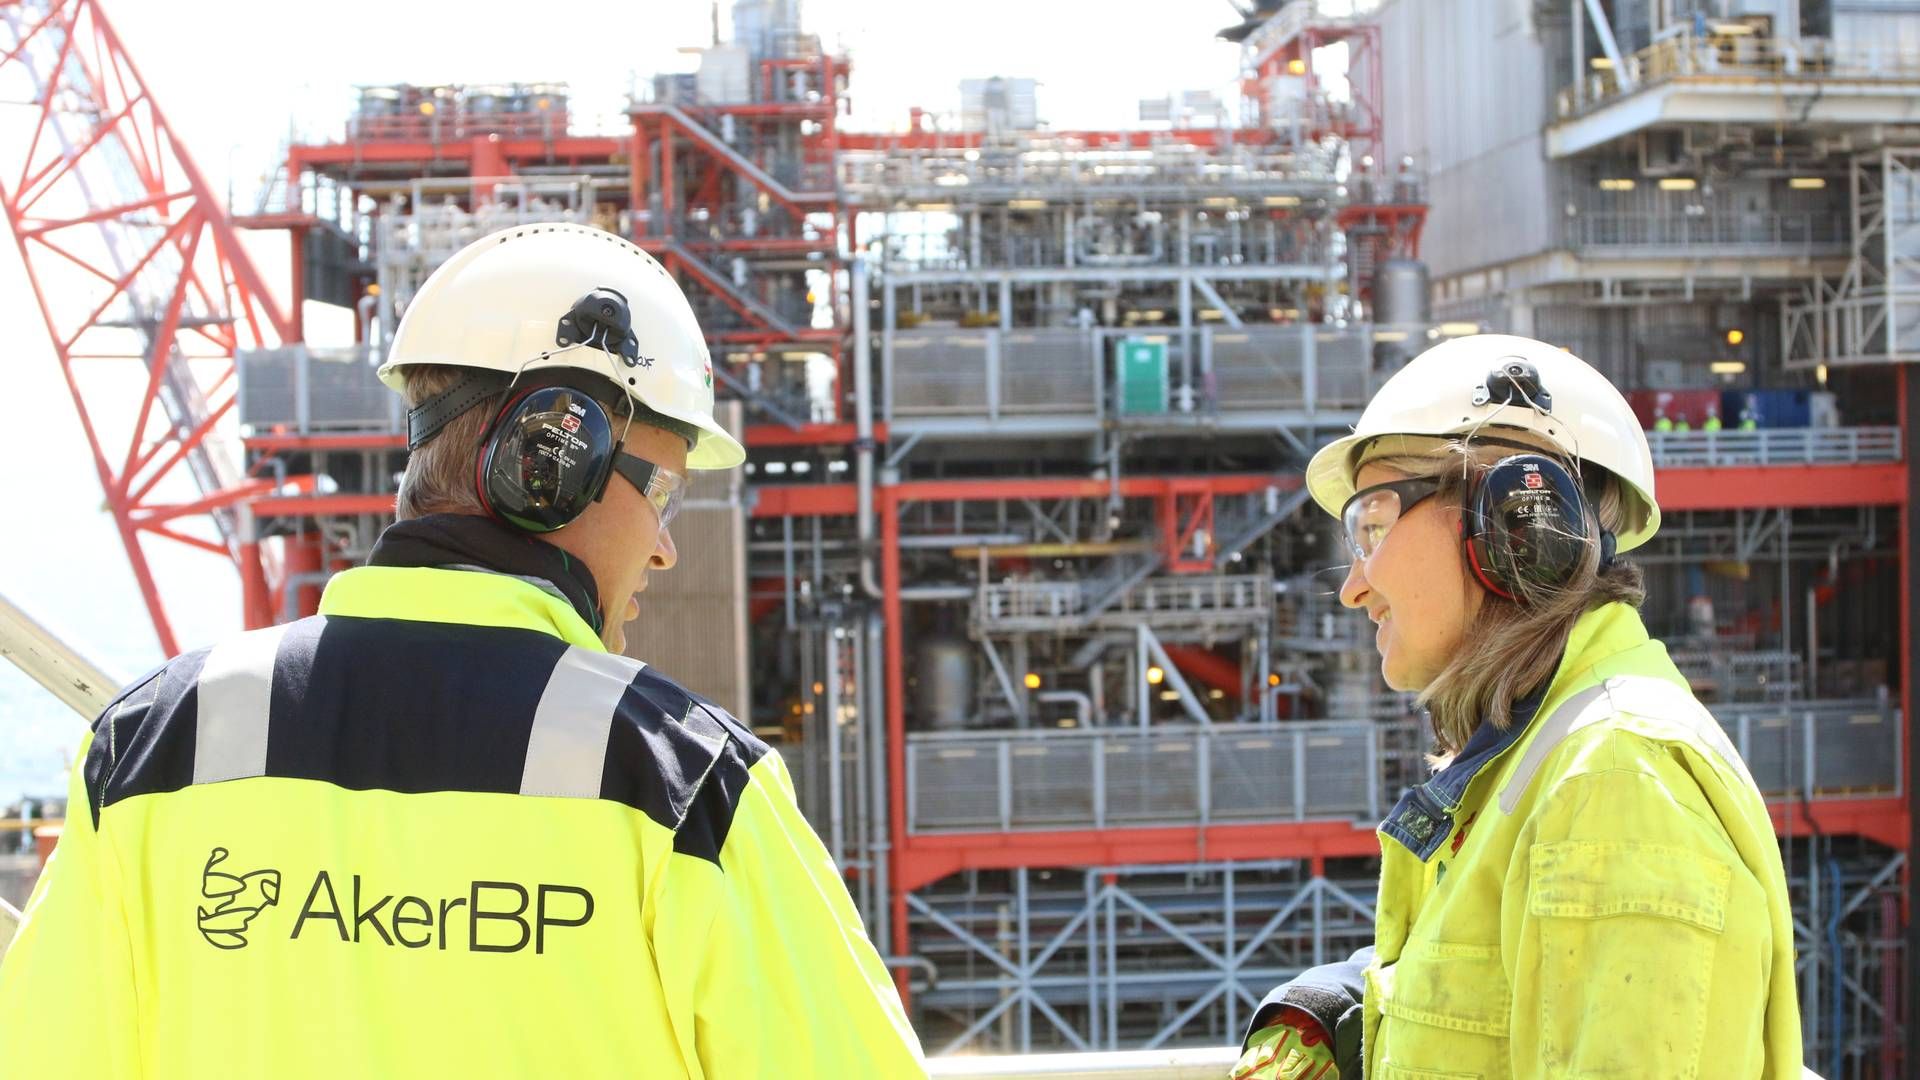 PÅVIRKES OG FØLGER MED: Aker BP følger med på klimatoppmøtet og oppgir at selskapet ønsker å levere så rent og kostnadseffektivt som mulig. | Foto: Aker BP